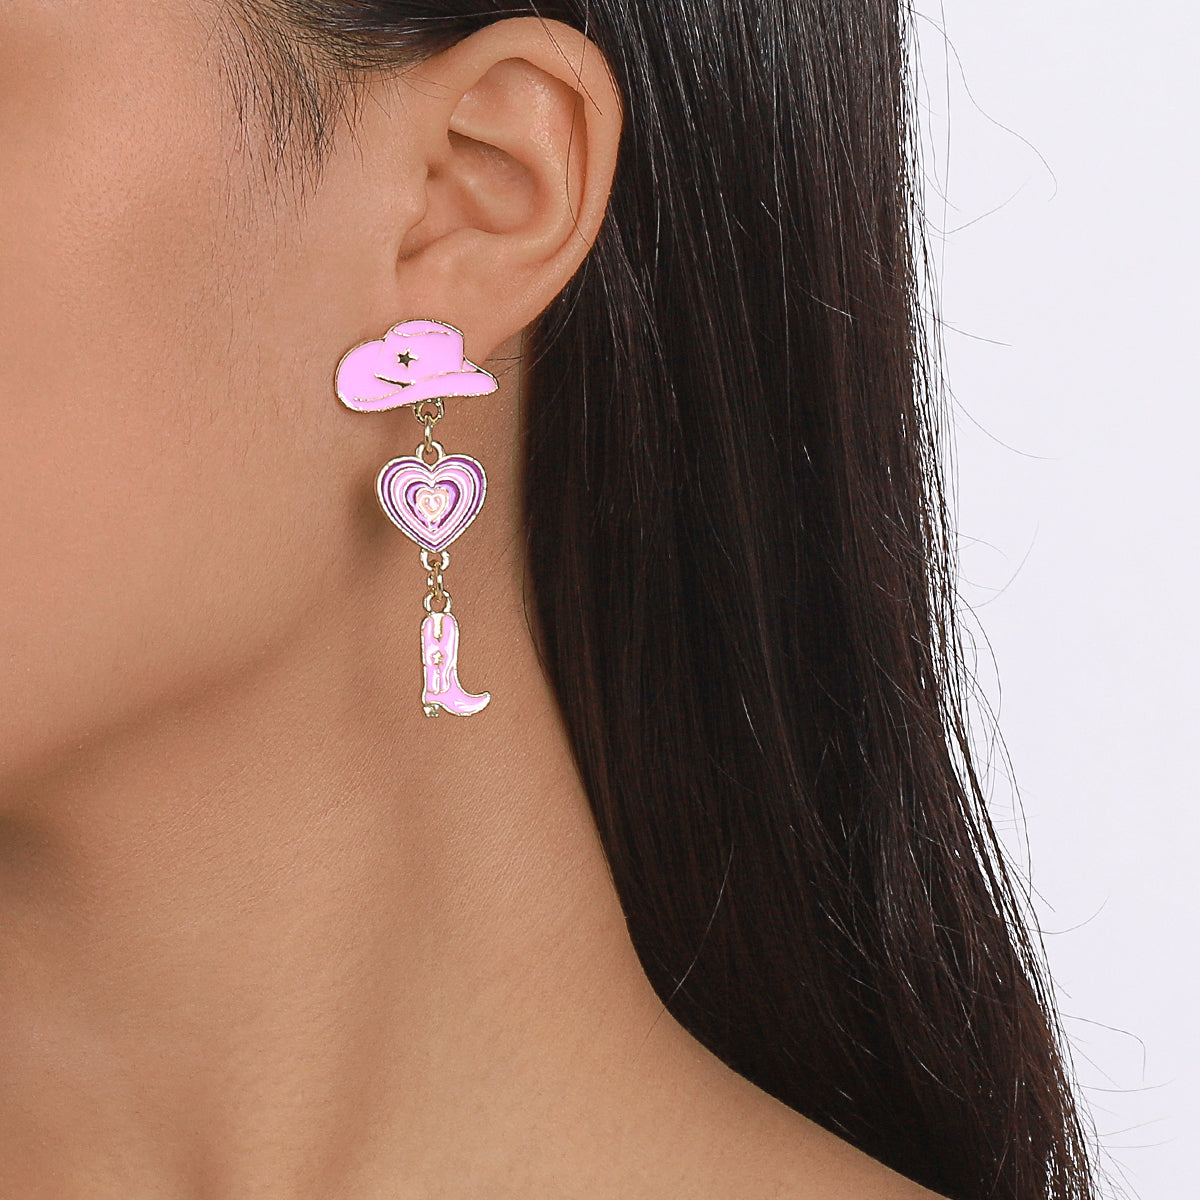 Enamel Cowgirl Pink Hats Drop Earrings medyjewelry